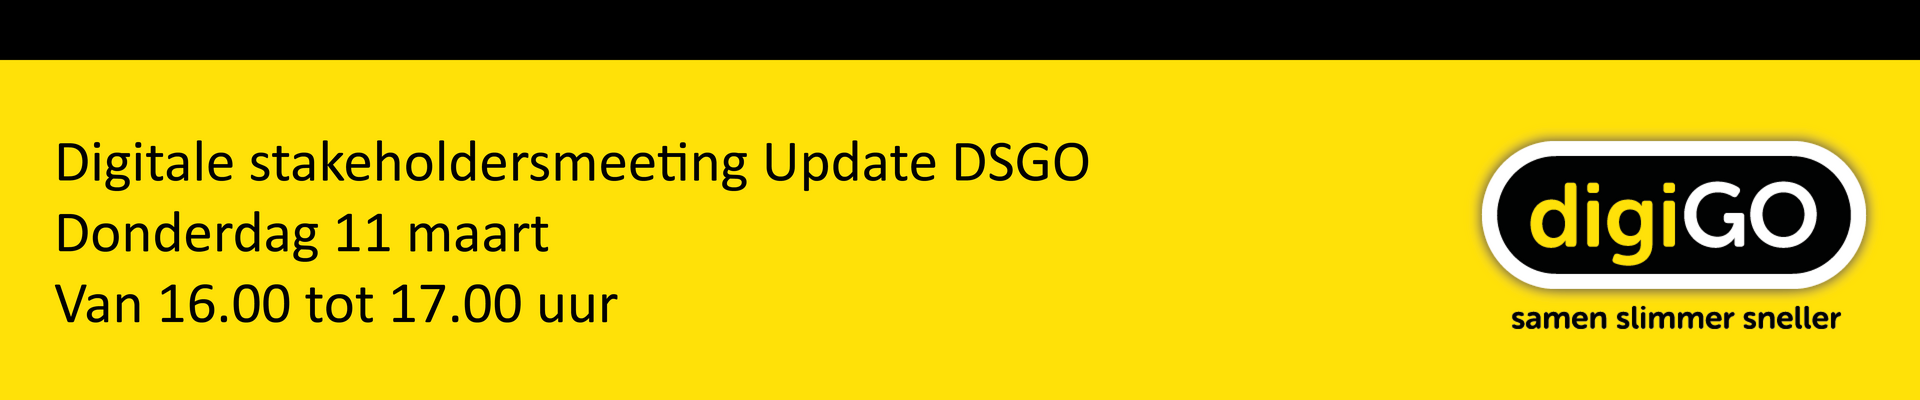 Digitale stakeholdersmeeting Update DSGO